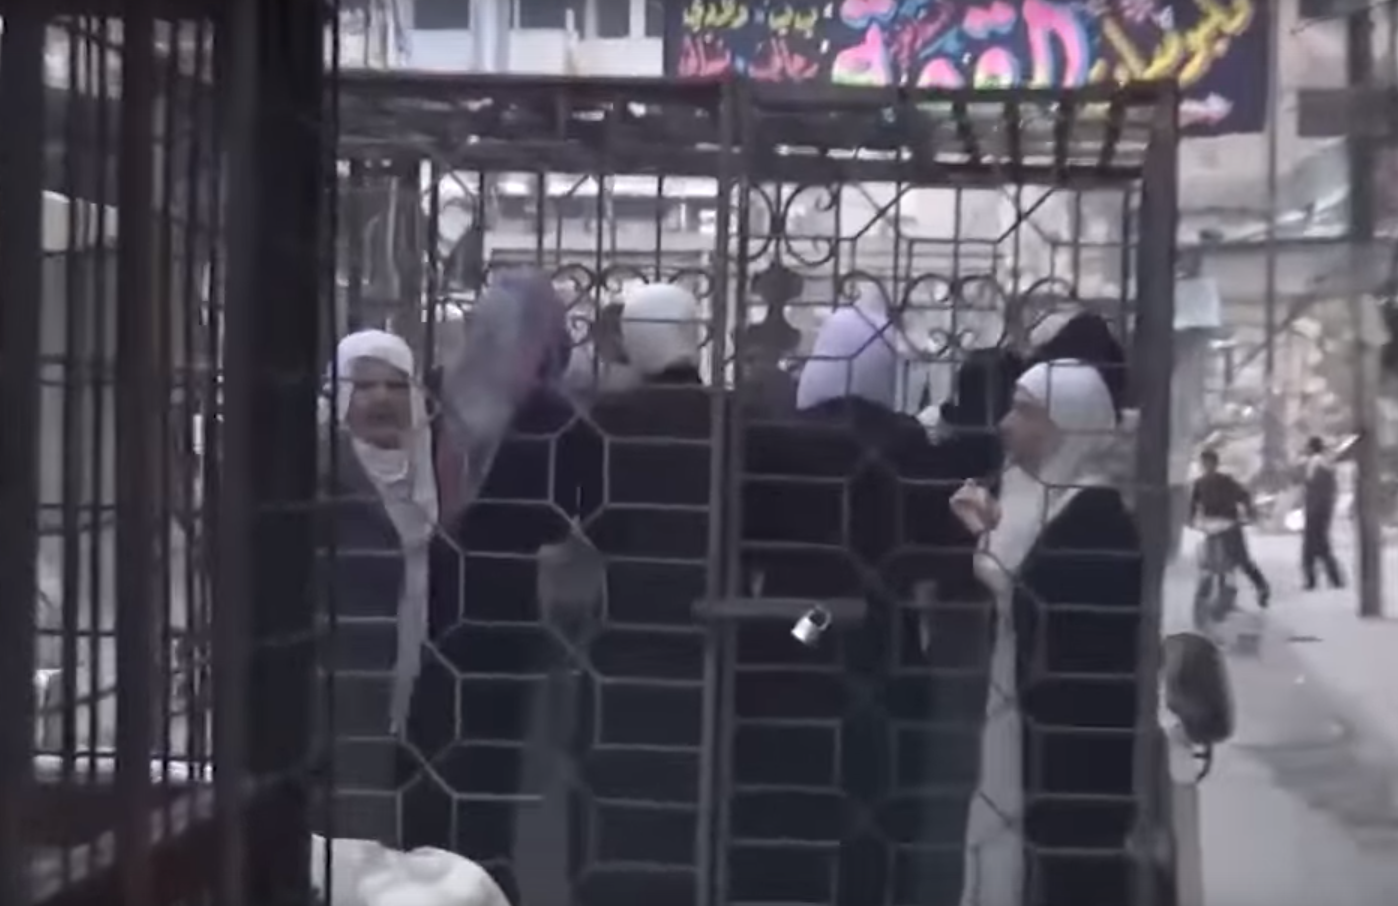 Ketrecbe zárt foglyokat használhat élő pajzsként az egyik szíriai lázadószervezet